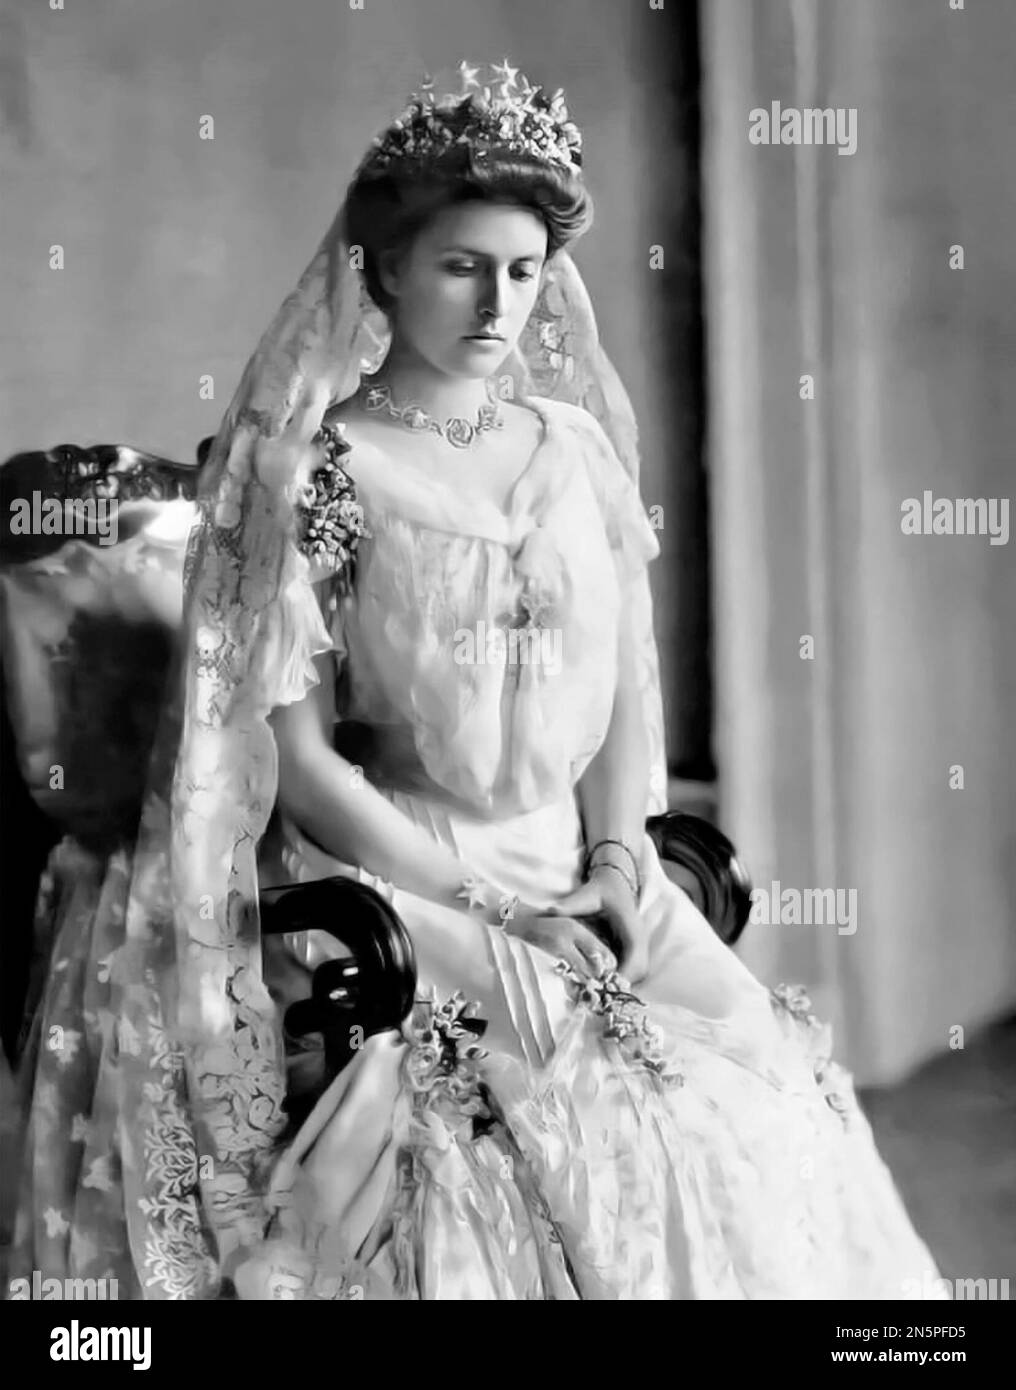 Princesse Alice de Battenberg. Portrait de la mère du prince Philip, princesse Alice de Battenberg (Victoria Alice Elizabeth Julia Marie : 1885 -1969) le jour de son mariage, 1903 Banque D'Images